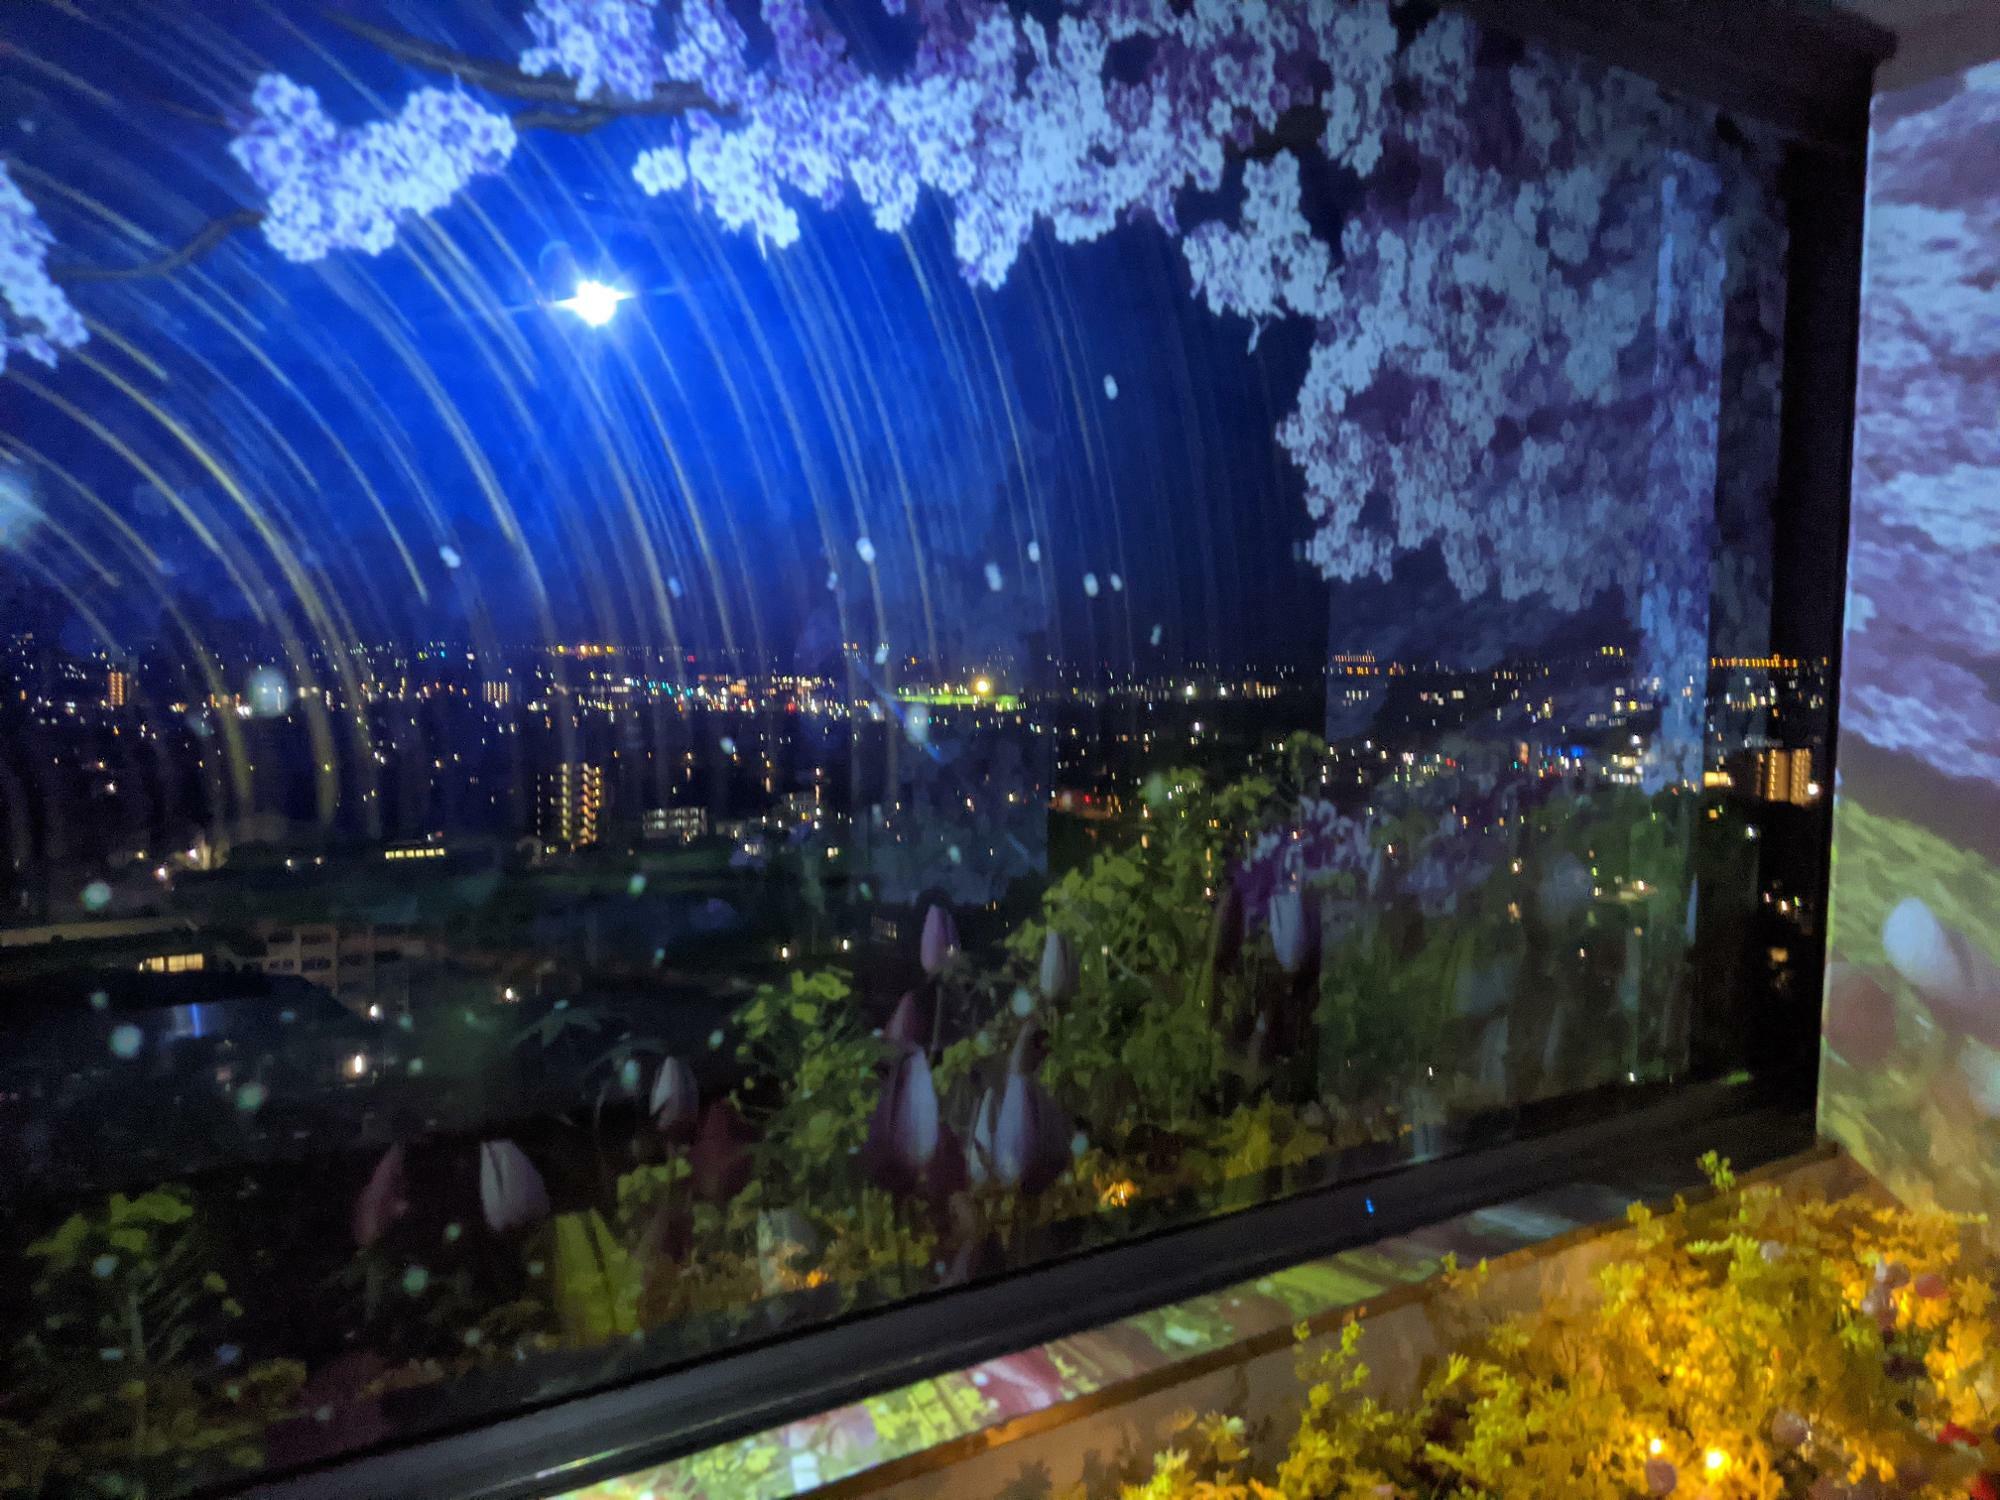 2020年度の夜アート県庁「星空の庭園」の県庁最上階から見るプロジェクションマッピング